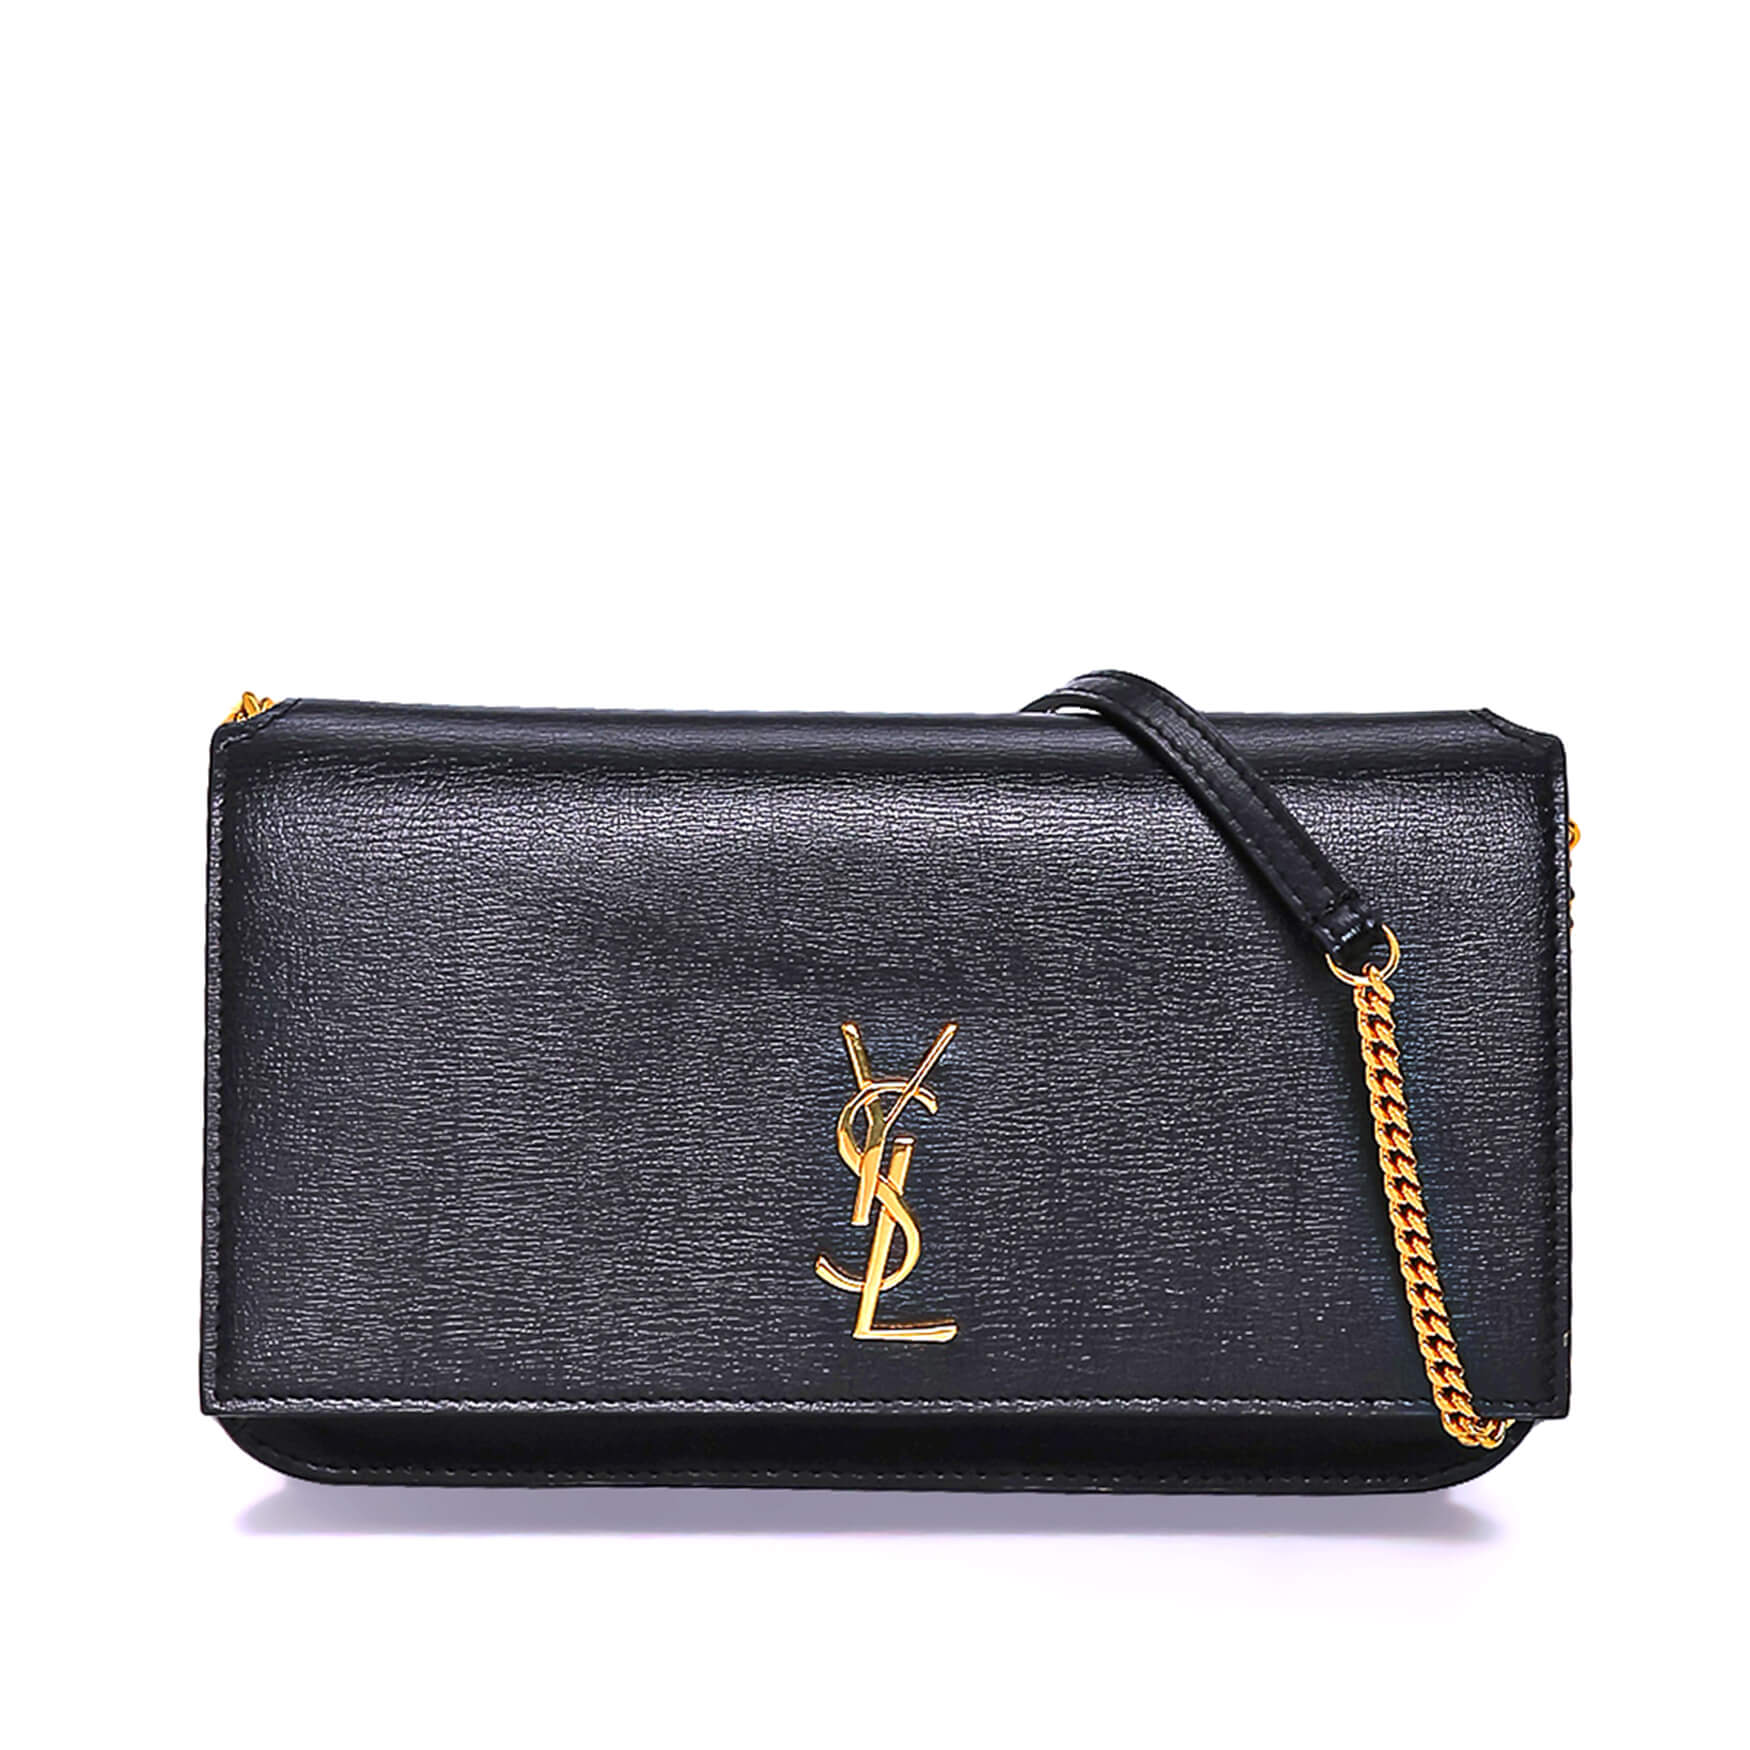 Yves Saint Laurent - Black Leather Phone Holder & Mini Messenger Bag